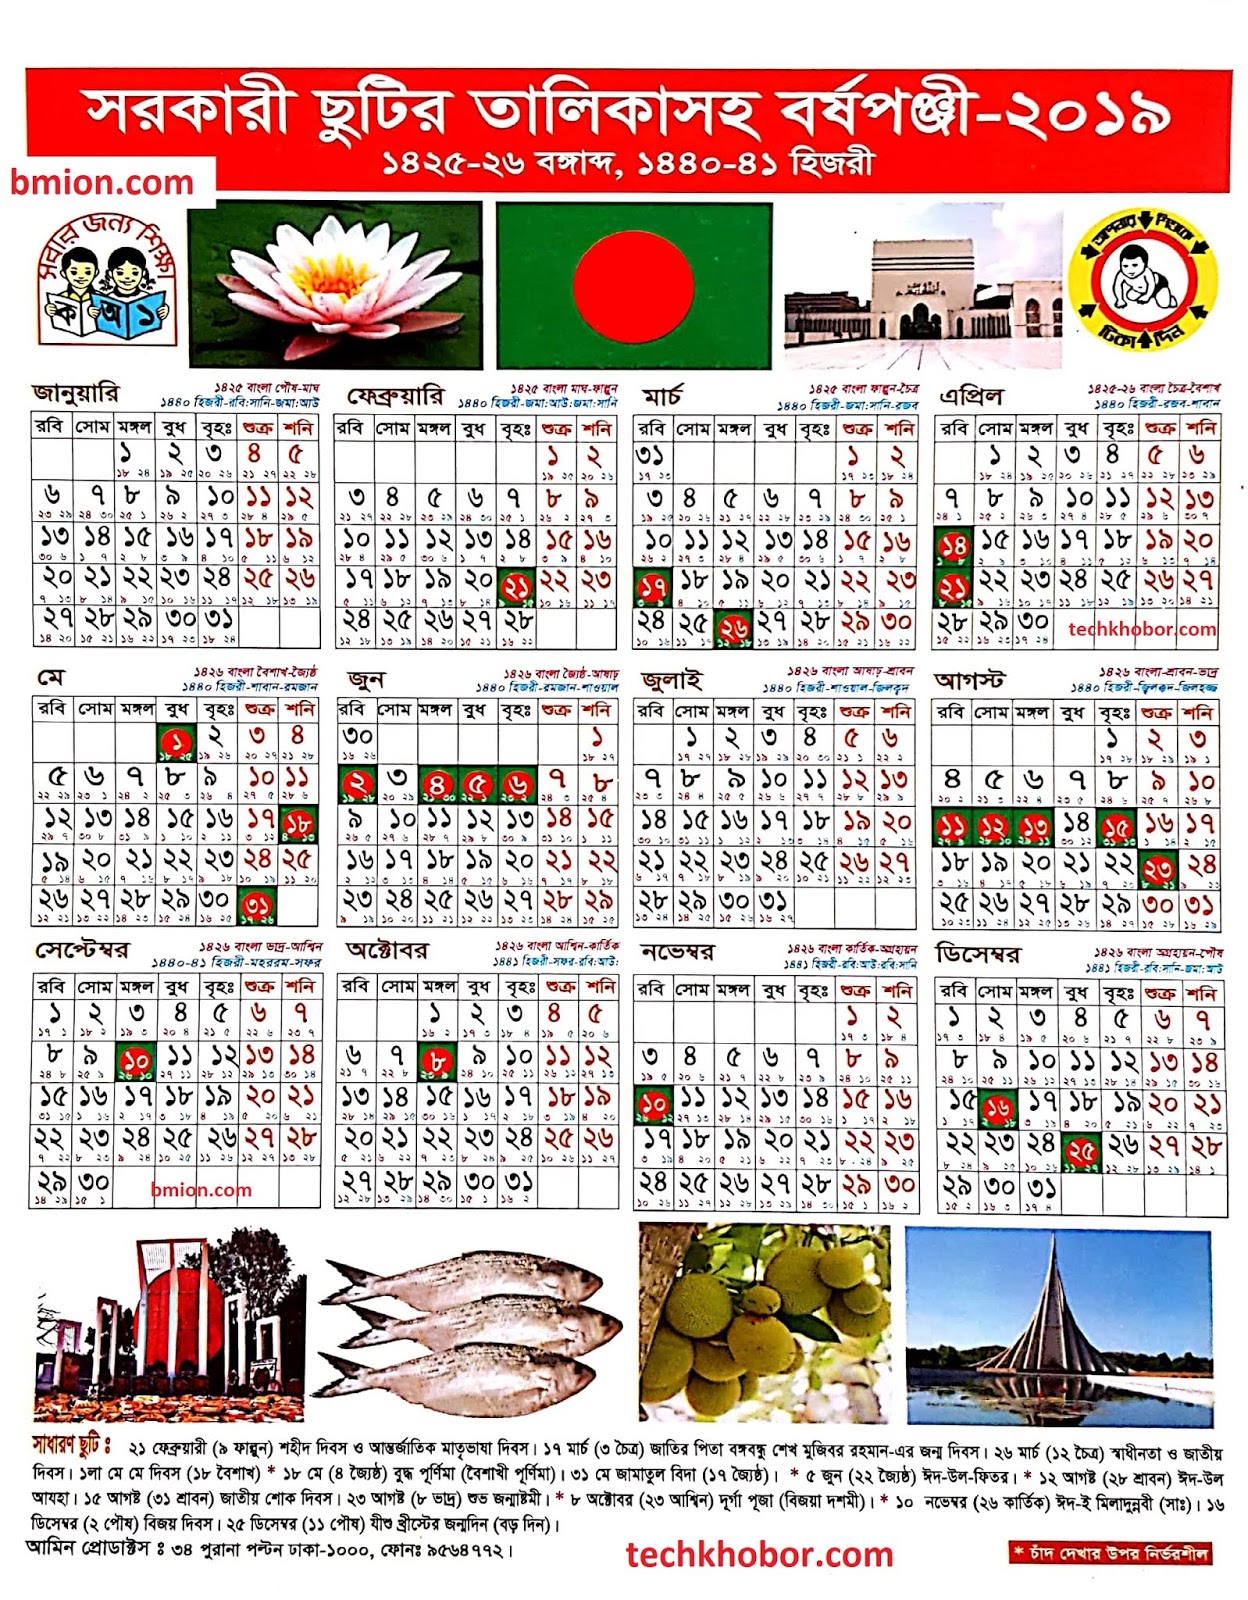 bengali-calendar-february-2022